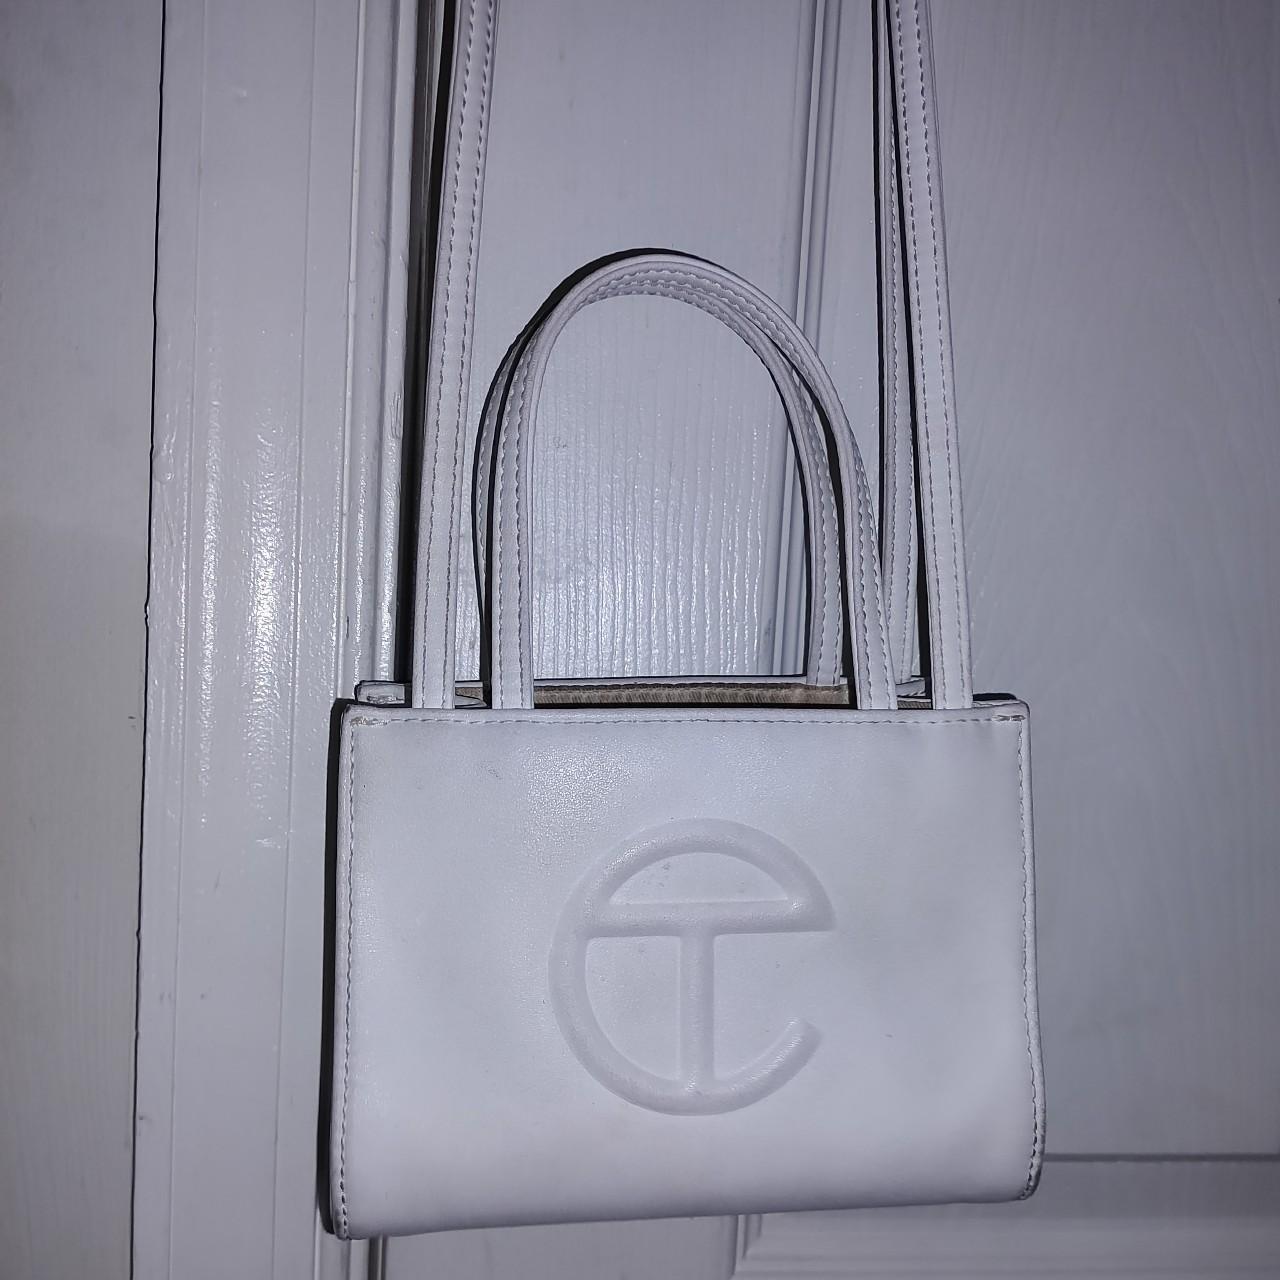 + telfar small shopping bag - white 100%... - Depop